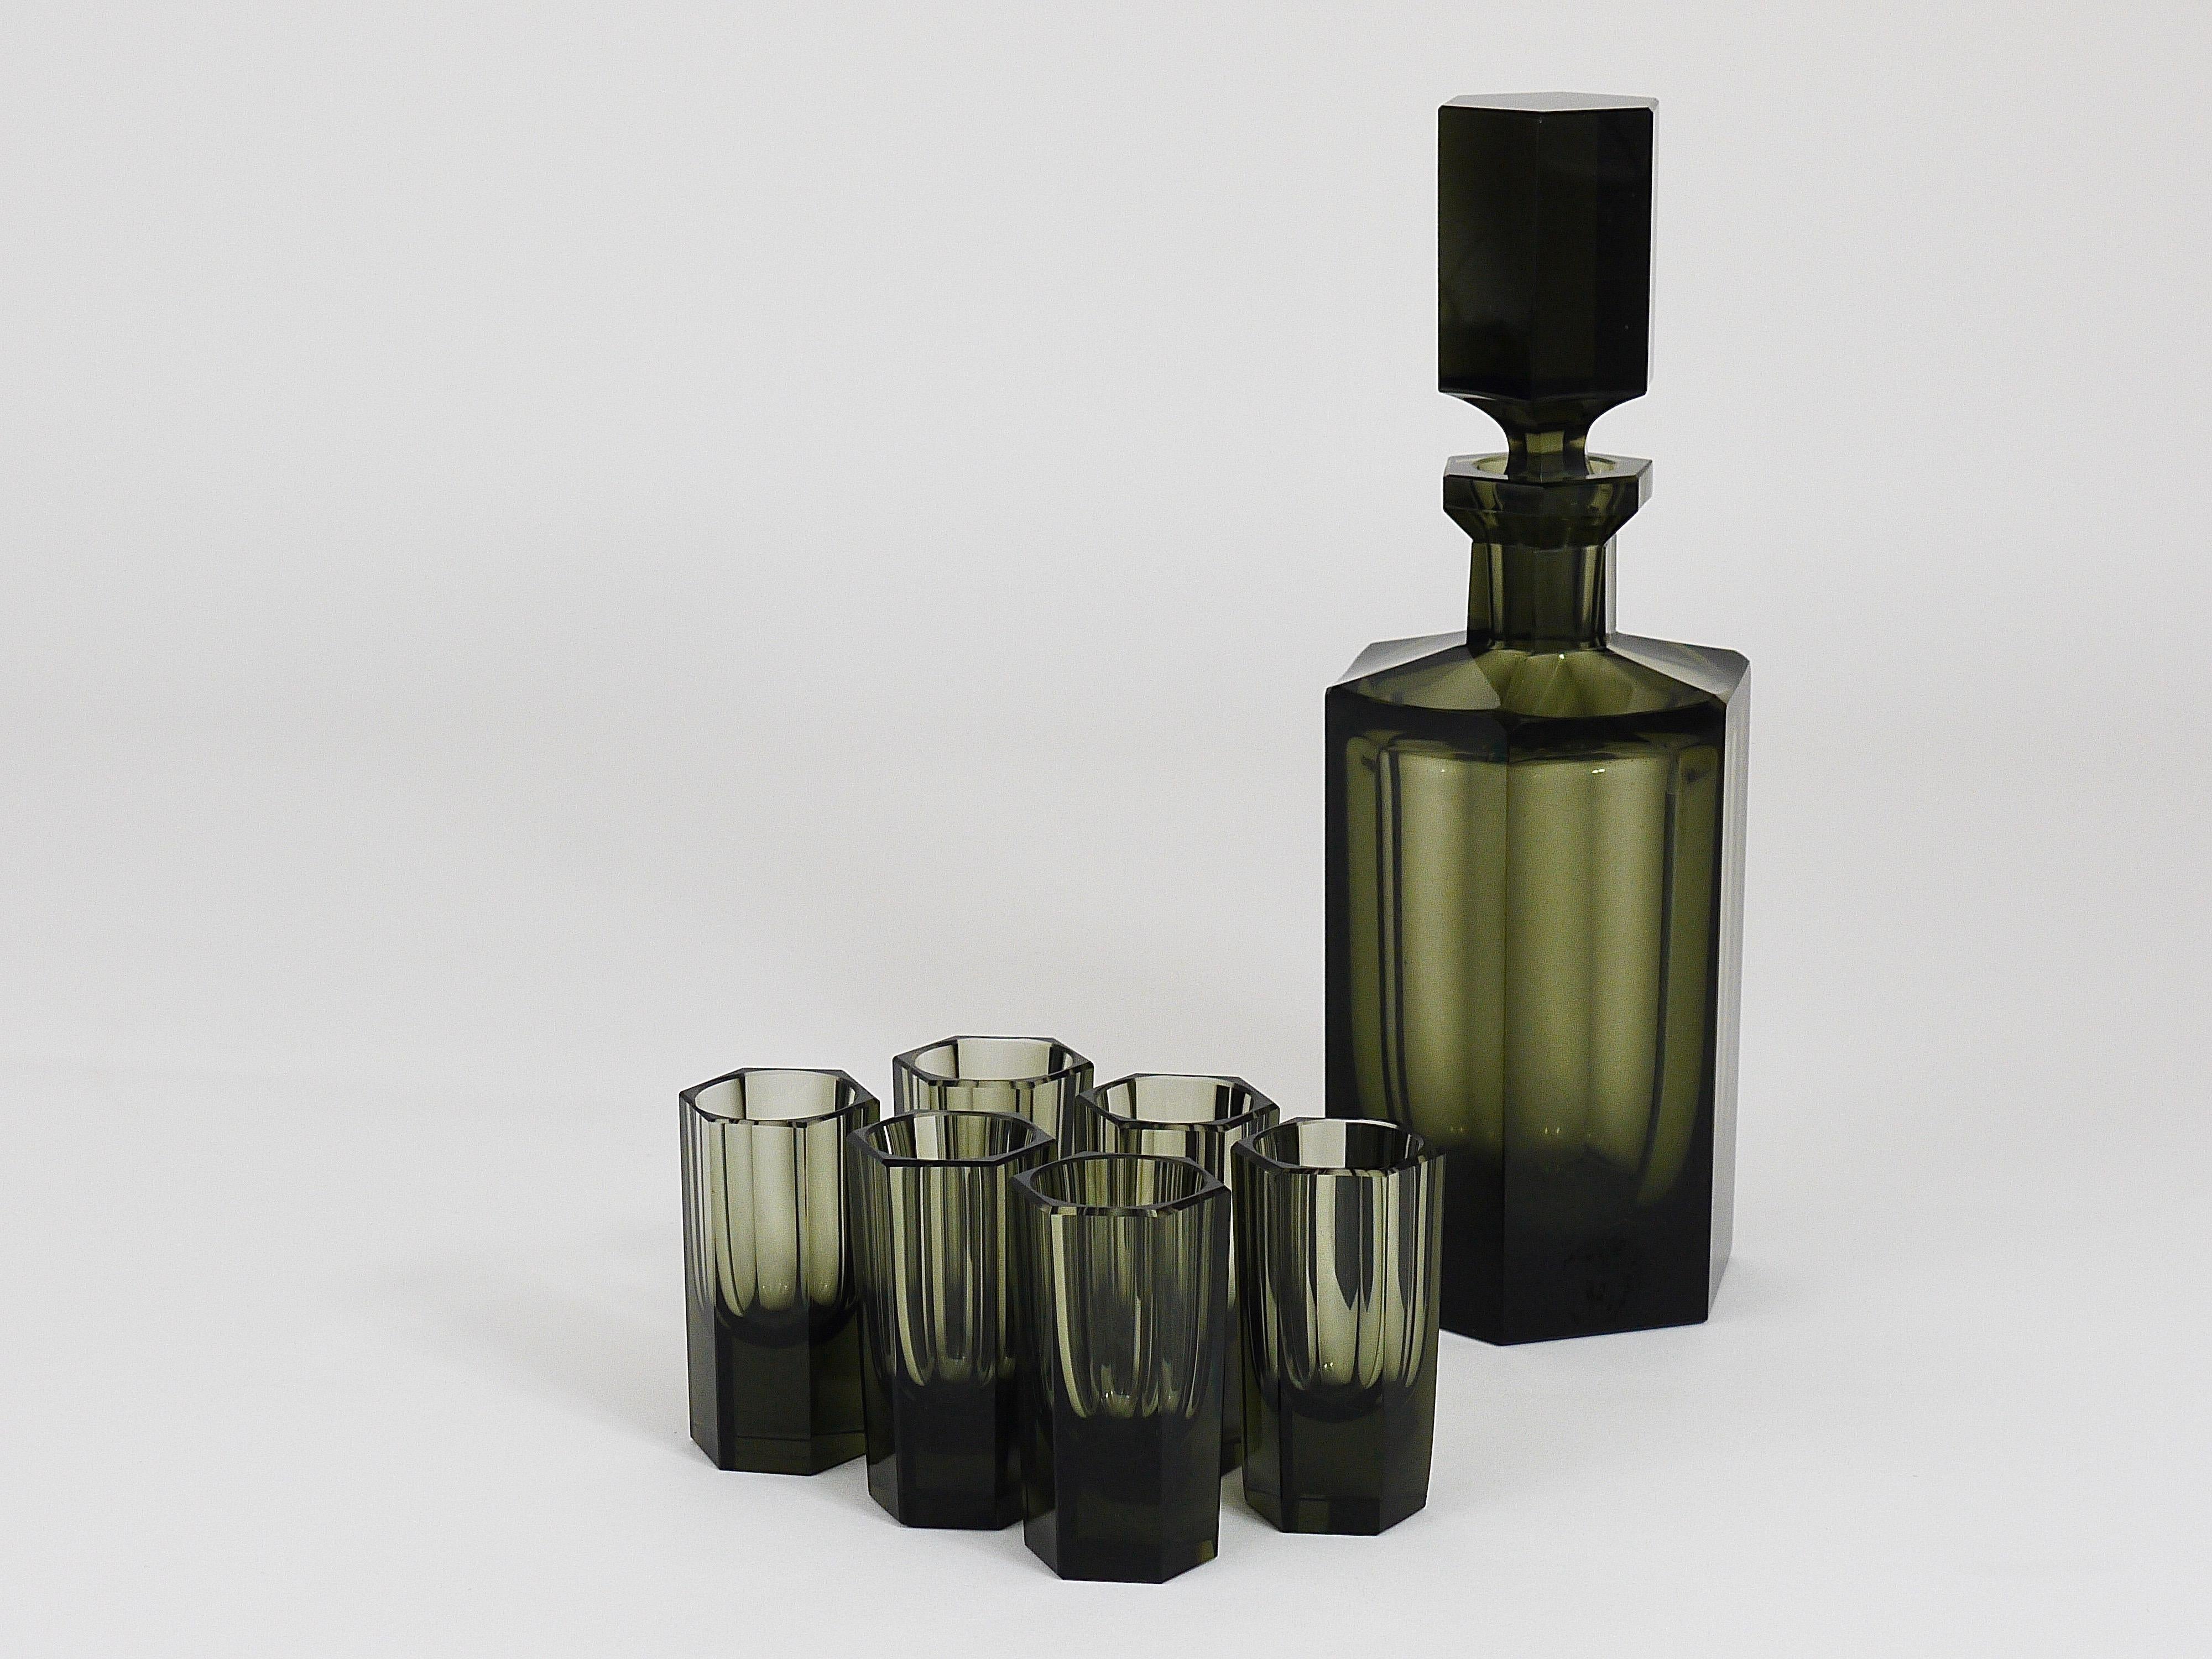 Czech Art Deco Ludwig Moser Karlsbad Bottle and Glasses 1920s Liquor Bar Set 2